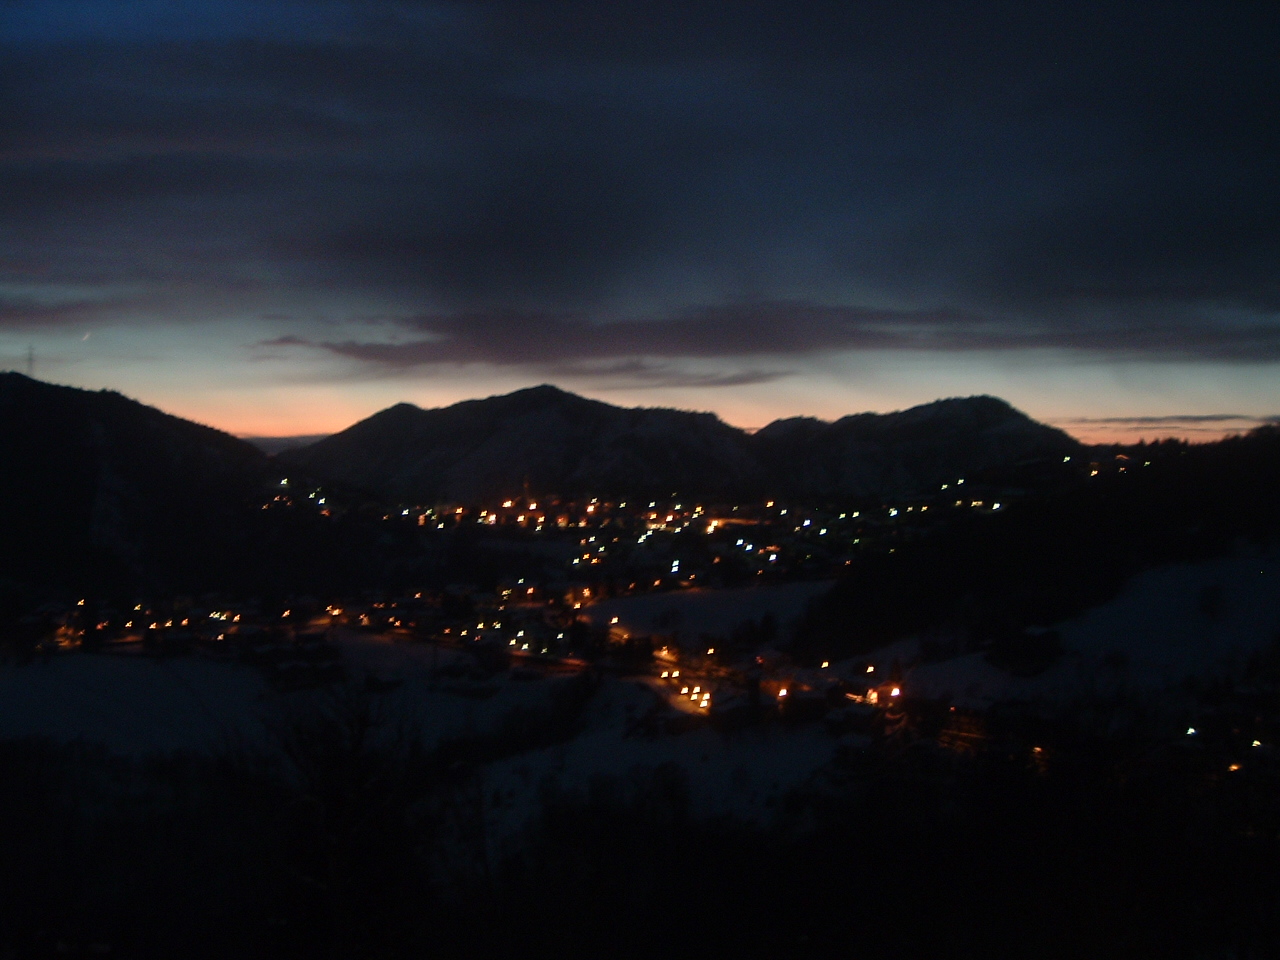 La montagna fotografata nel buio e silenzio della notte